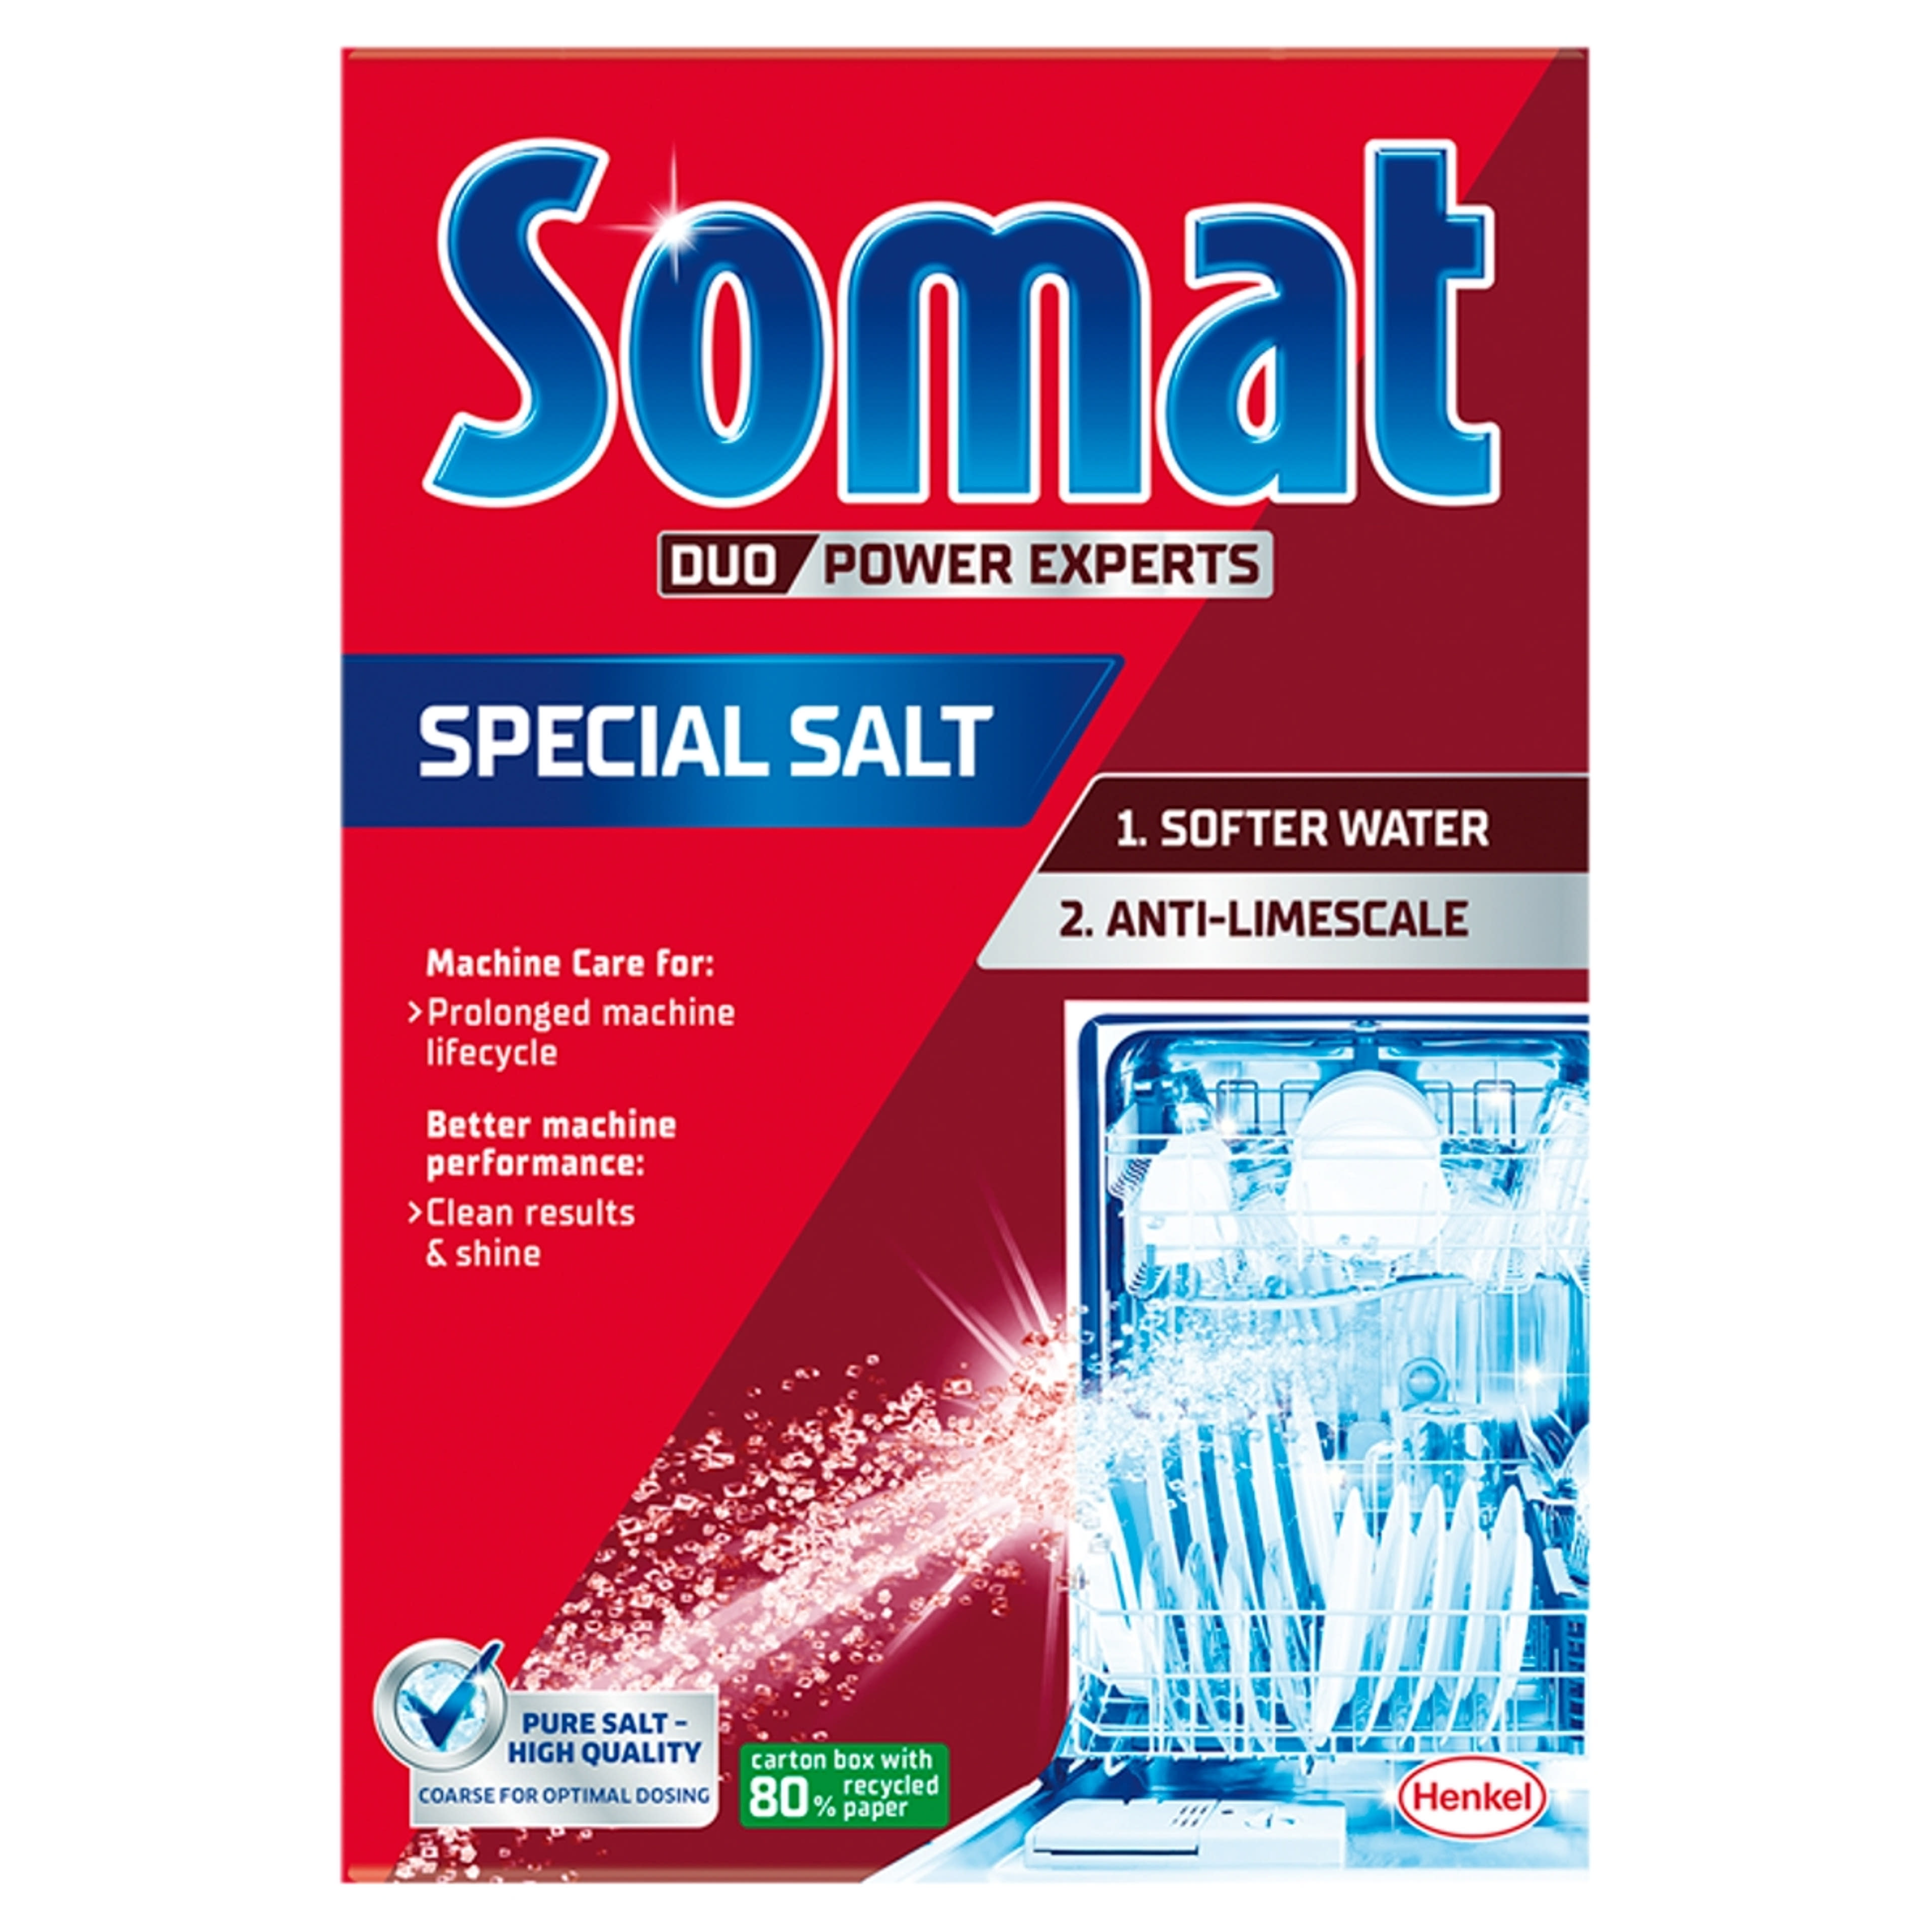 Somat Duo Power Experts vízlágyító só mosogatógéphez - 1,5 kg-2